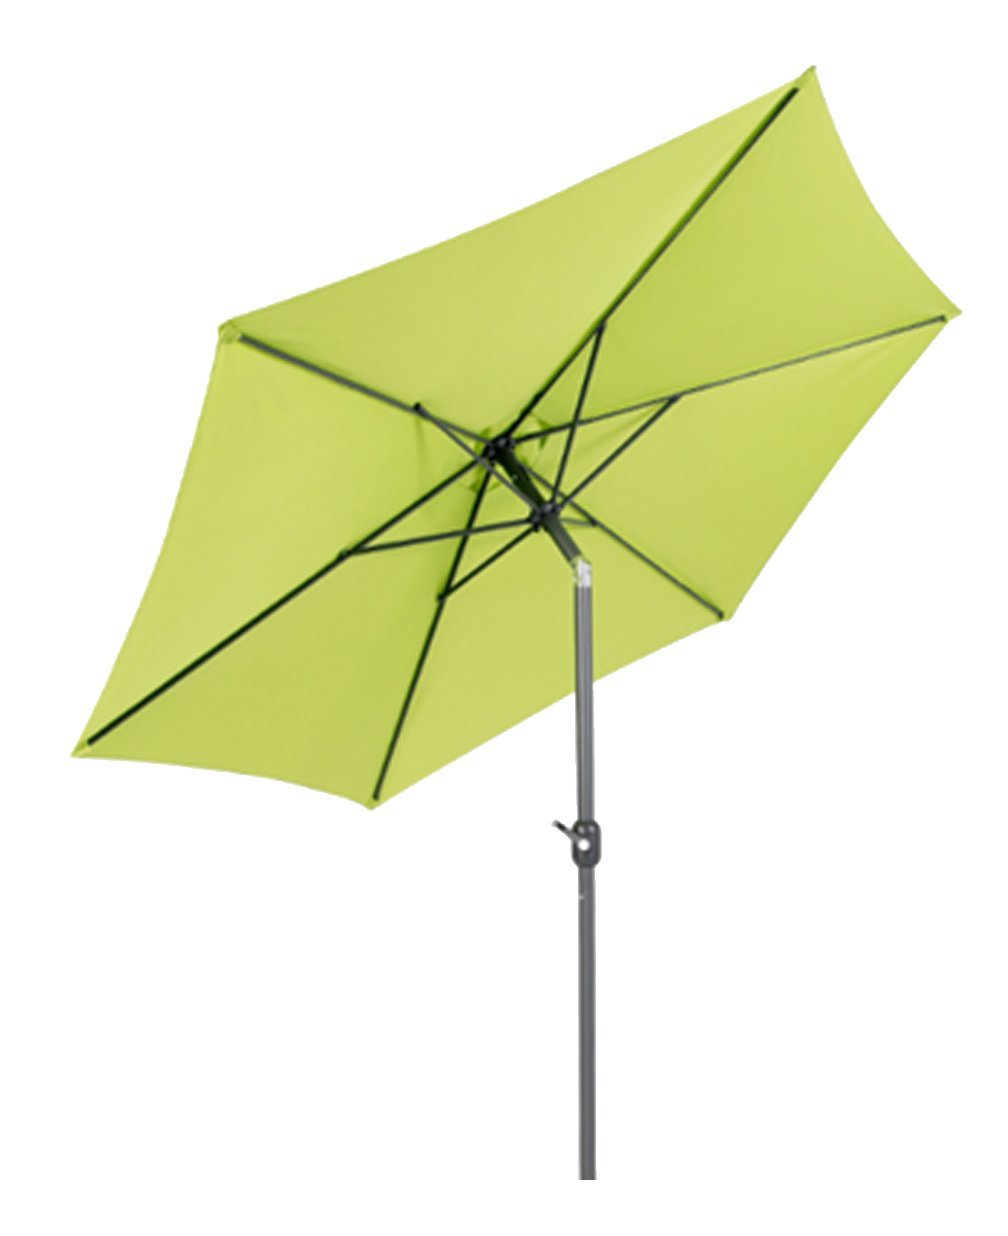 LINDER EXCLUSIV Sonnenschirm Ø 3m mit Knick knickbar mit Kurbel Schirm Gartenschirm 4 Farben (Lime-grün)